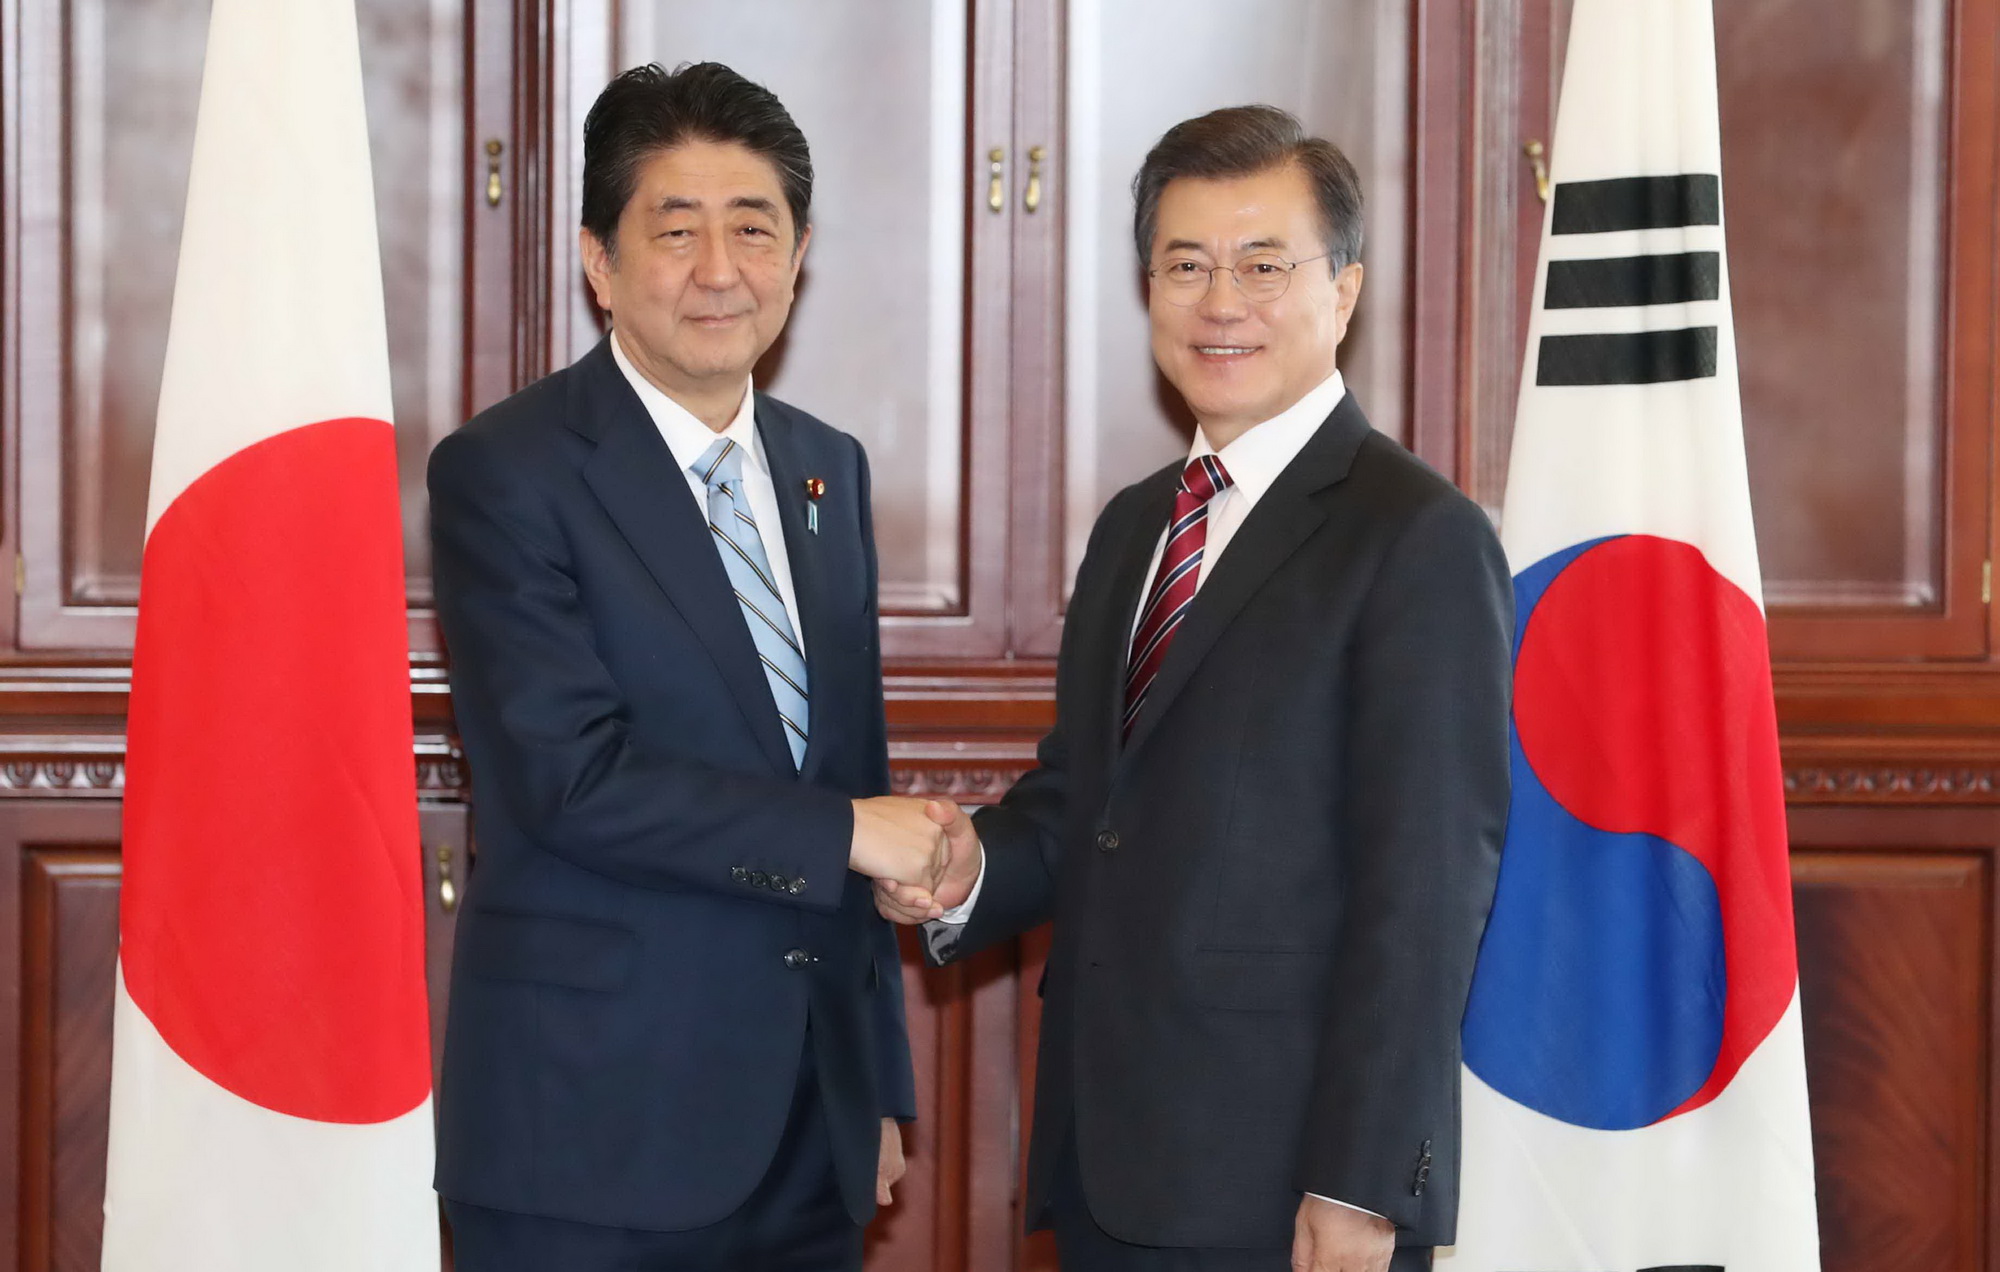 Ngày 7/9, Tổng thống Hàn Quốc Moon Jae-in (phải) và Thủ tướng Nhật Bản Shizo Abe đã có cuộc gặp thượng đỉnh song phương bên lề Diễn đàn kinh tế quốc tế Phương Đông lần thứ 3 (EEF) được tổ chức tại thành phố Vladivostok thuộc khu vực Viễn Đông của Nga. (Ảnh: Yonhap/TTXVN)